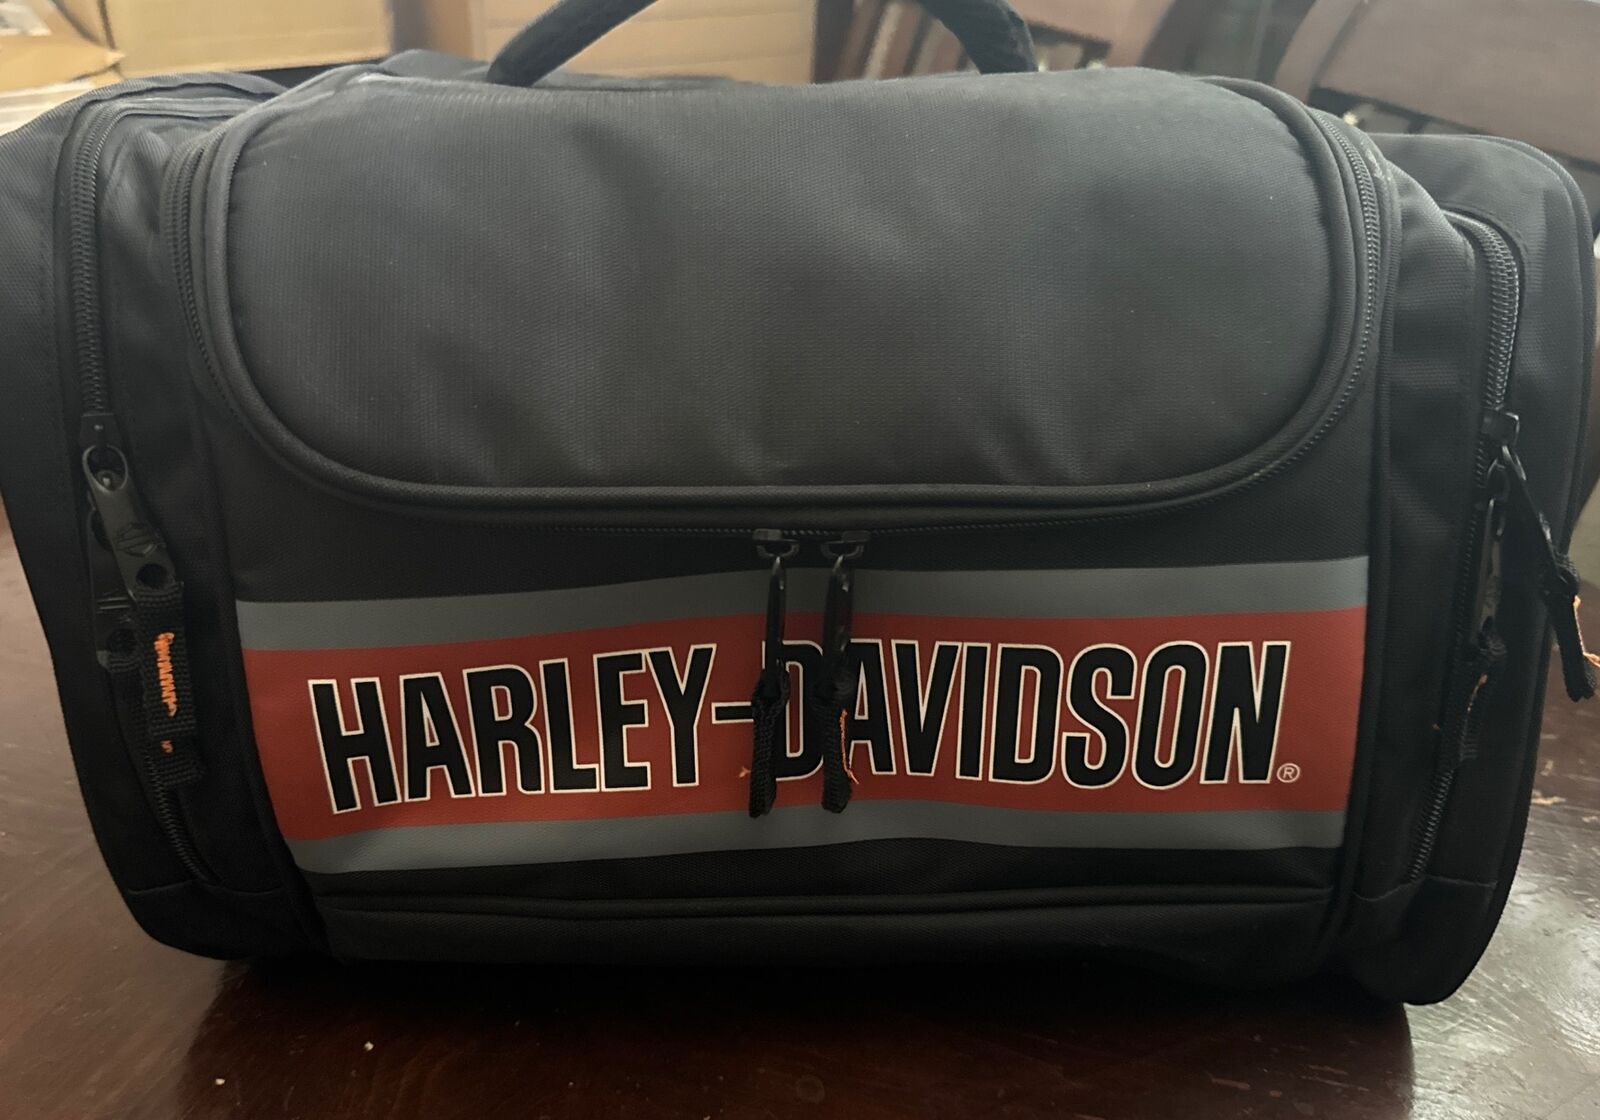 Harley Davidson travel bag